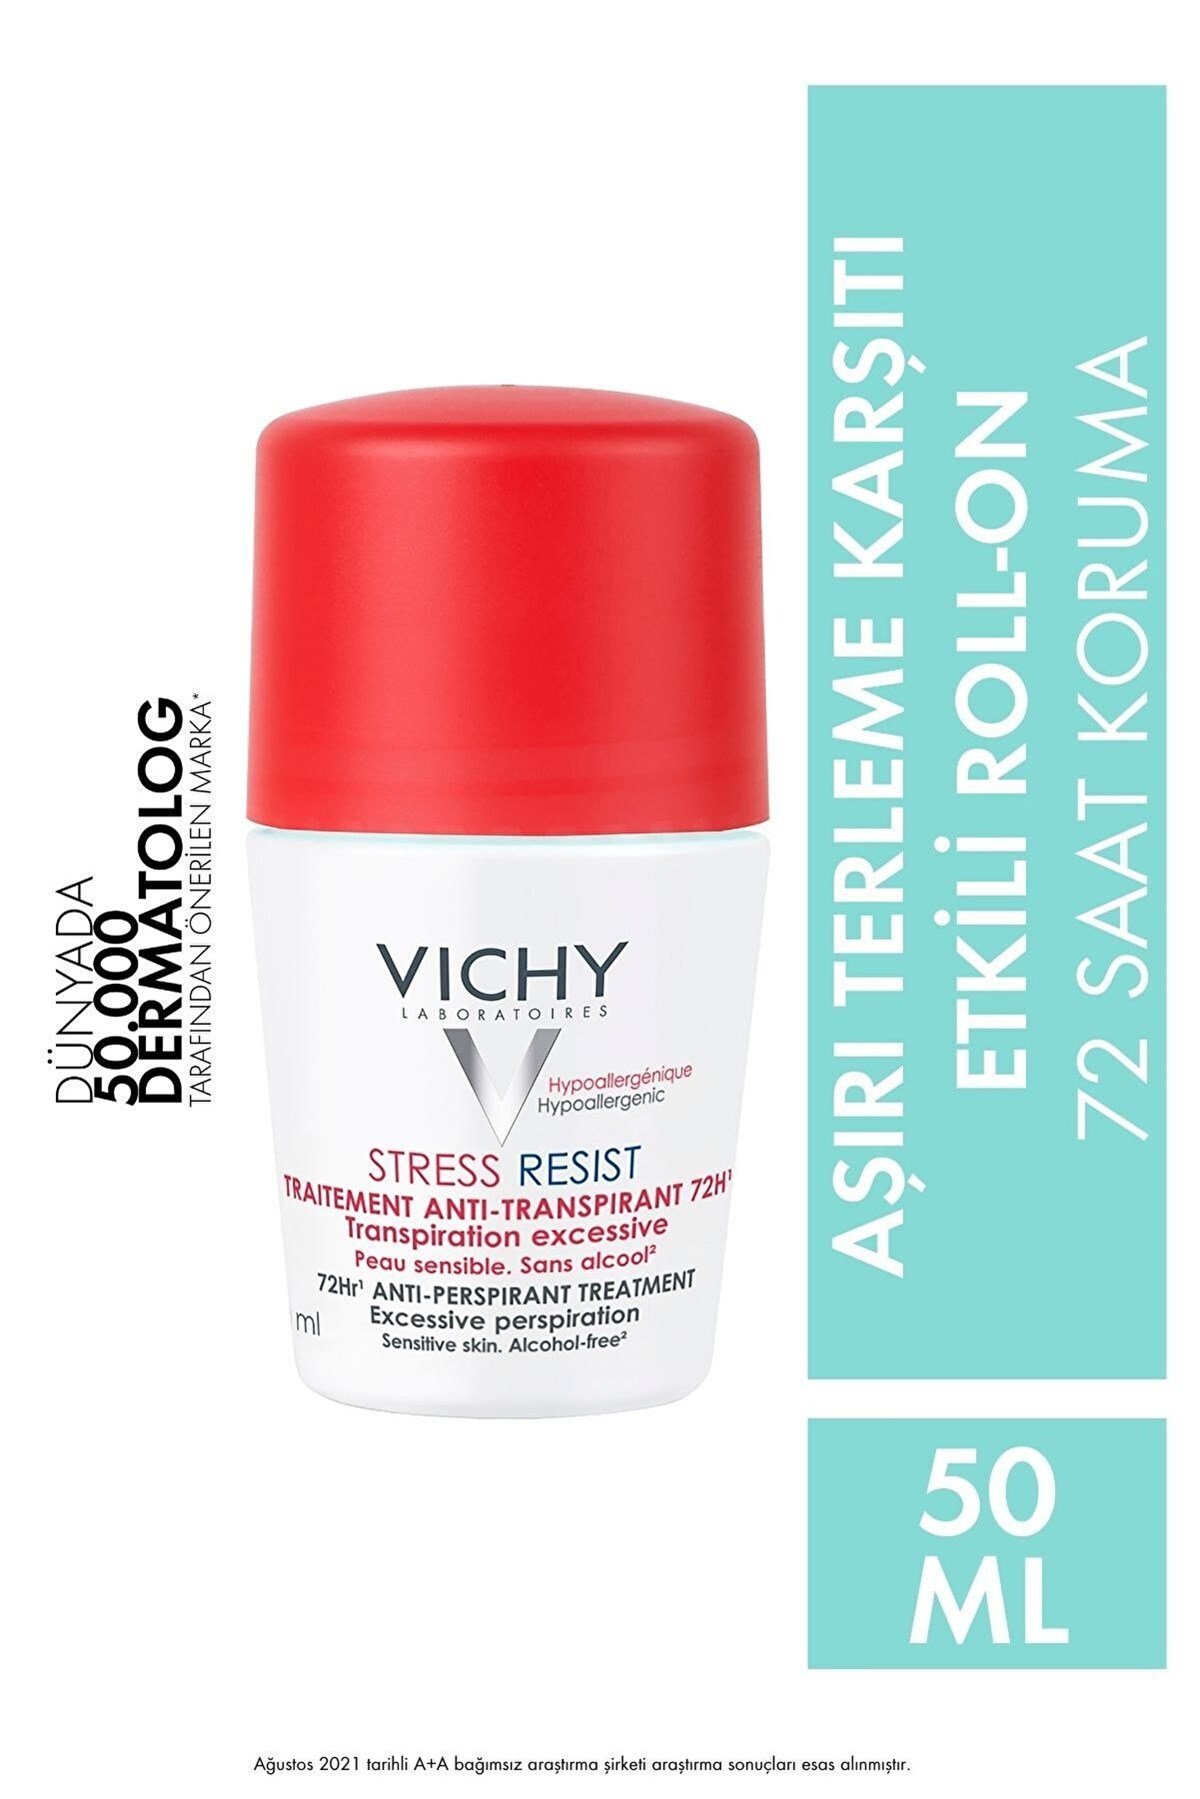 VICHY Stress Resist Terleme Karşıtı Roll On Deodorant Yoğun Kontrol 50ml |  Farma Ucuz